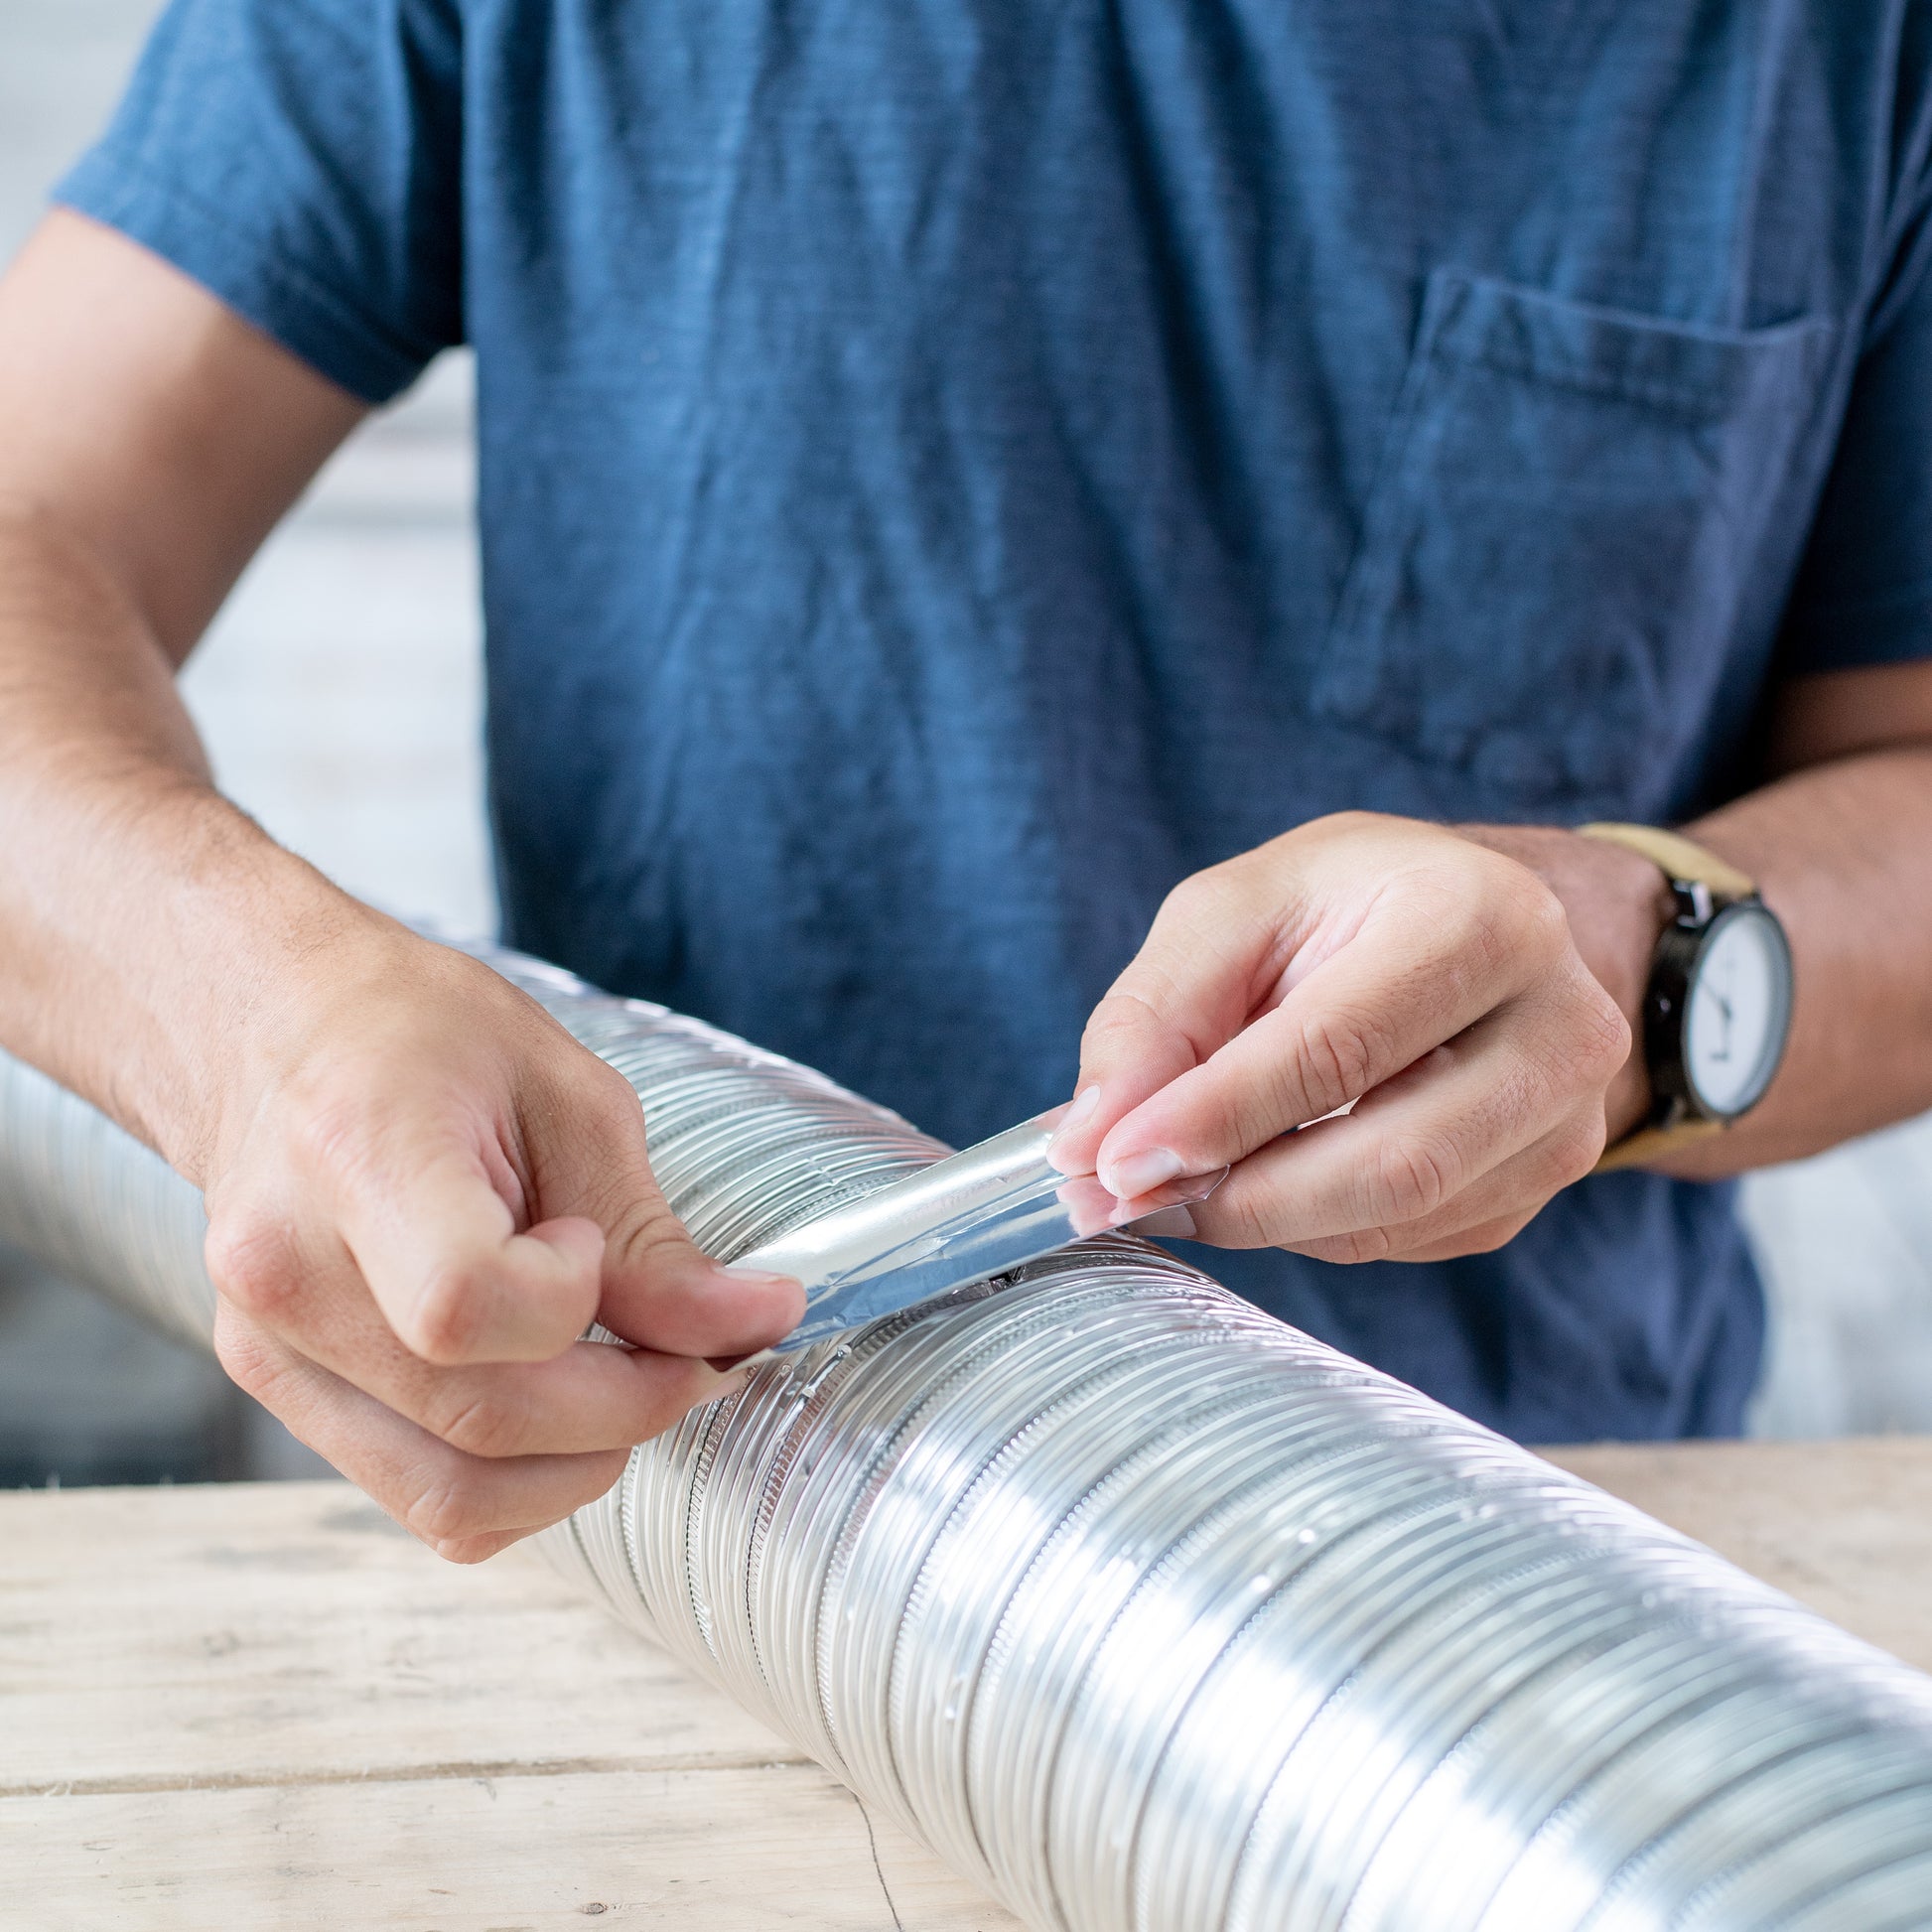 Using aluminum foil as repair tape